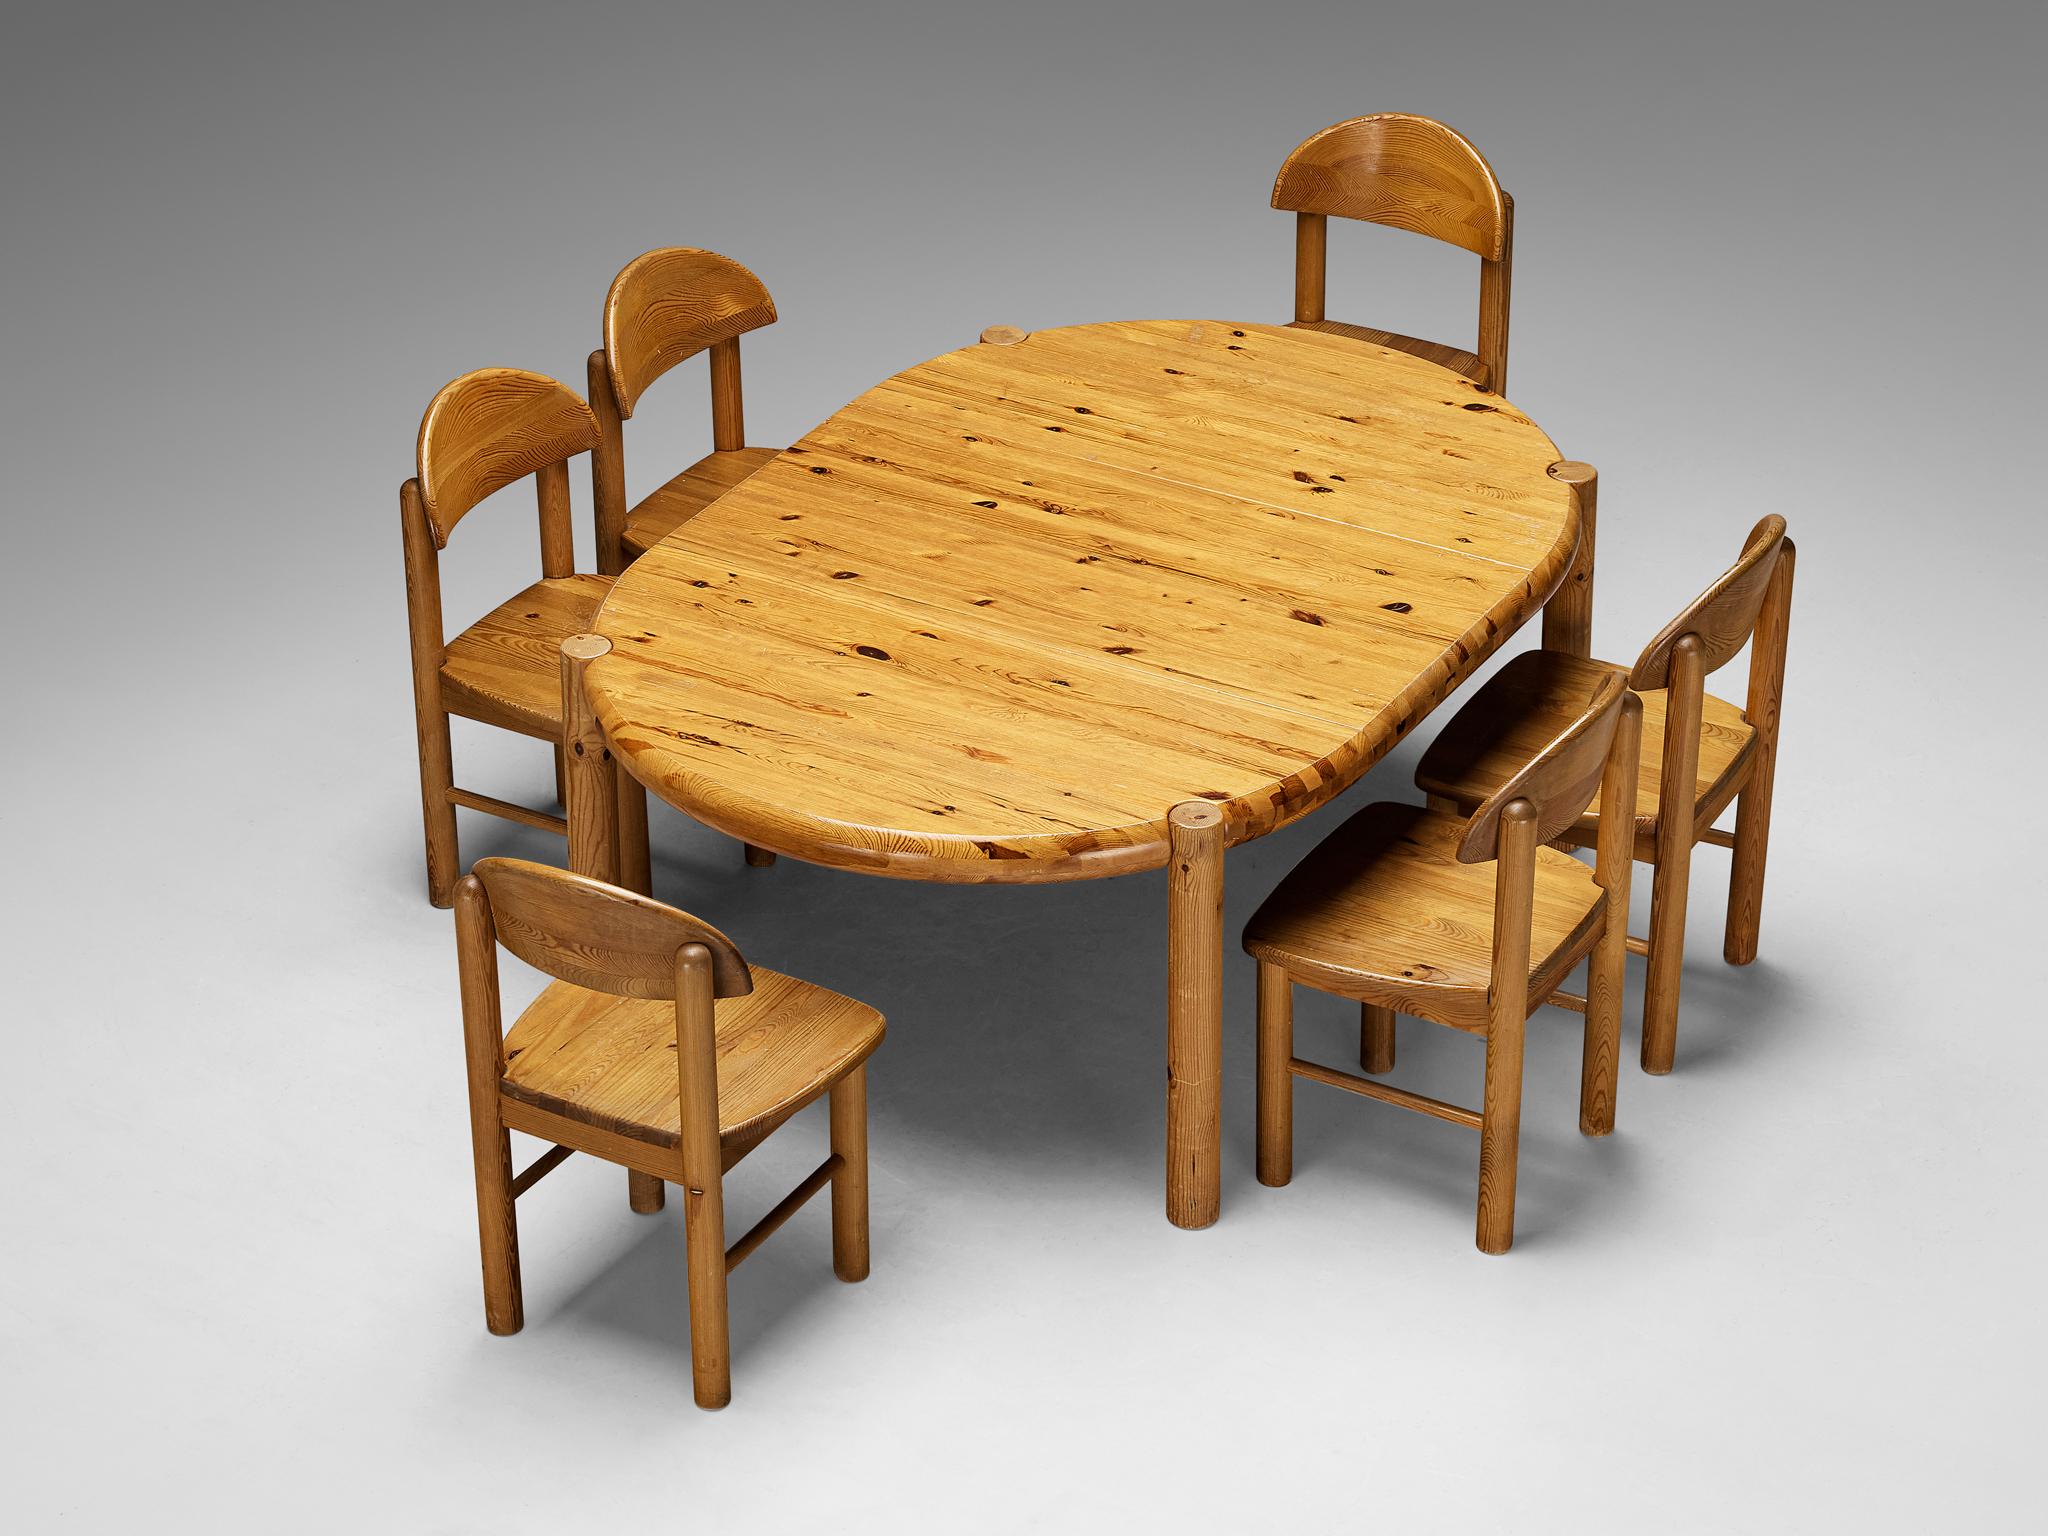 Rainer Daumiller, Esstischgarnitur mit sechs Stühlen, Kiefer, Dänemark, 1970er Jahre.

Dieses Esszimmer-Set besteht aus einem ausziehbaren Esstisch und sechs Esszimmerstühlen, entworfen von Rainer Daumiller. Der Tisch kann in zwei Versionen